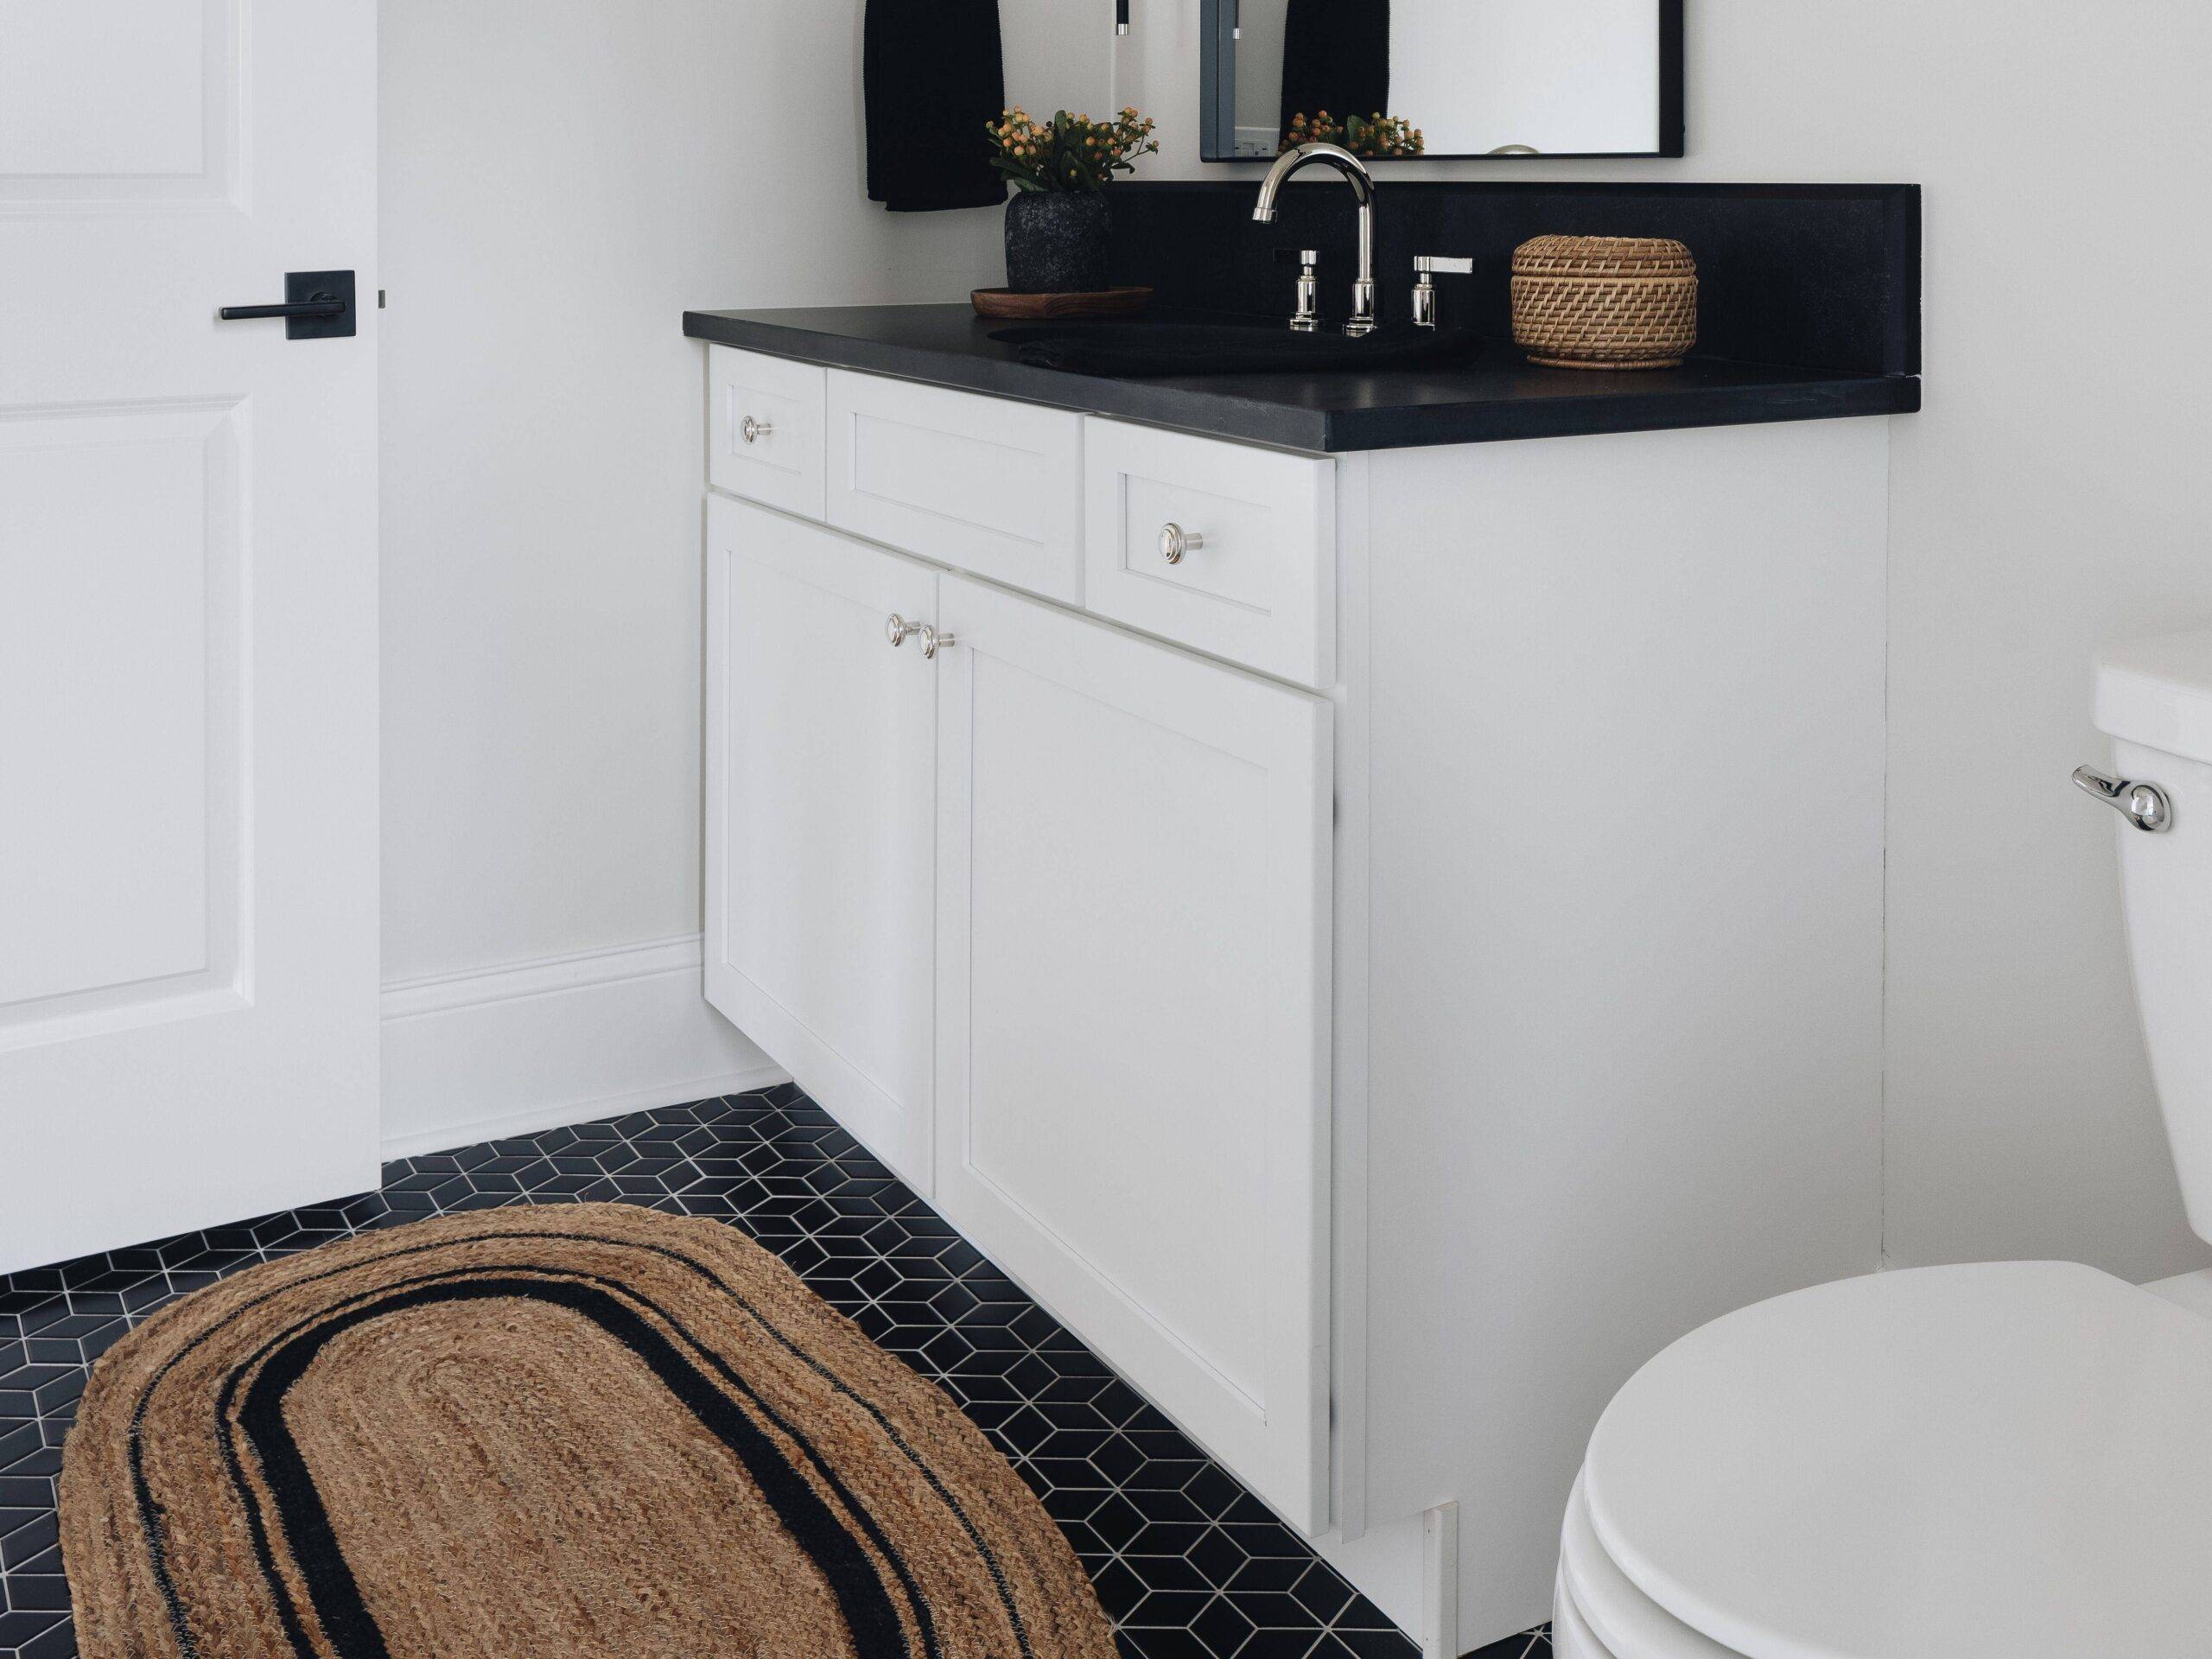 Bathroom with black rhombus patterned tile floor. 